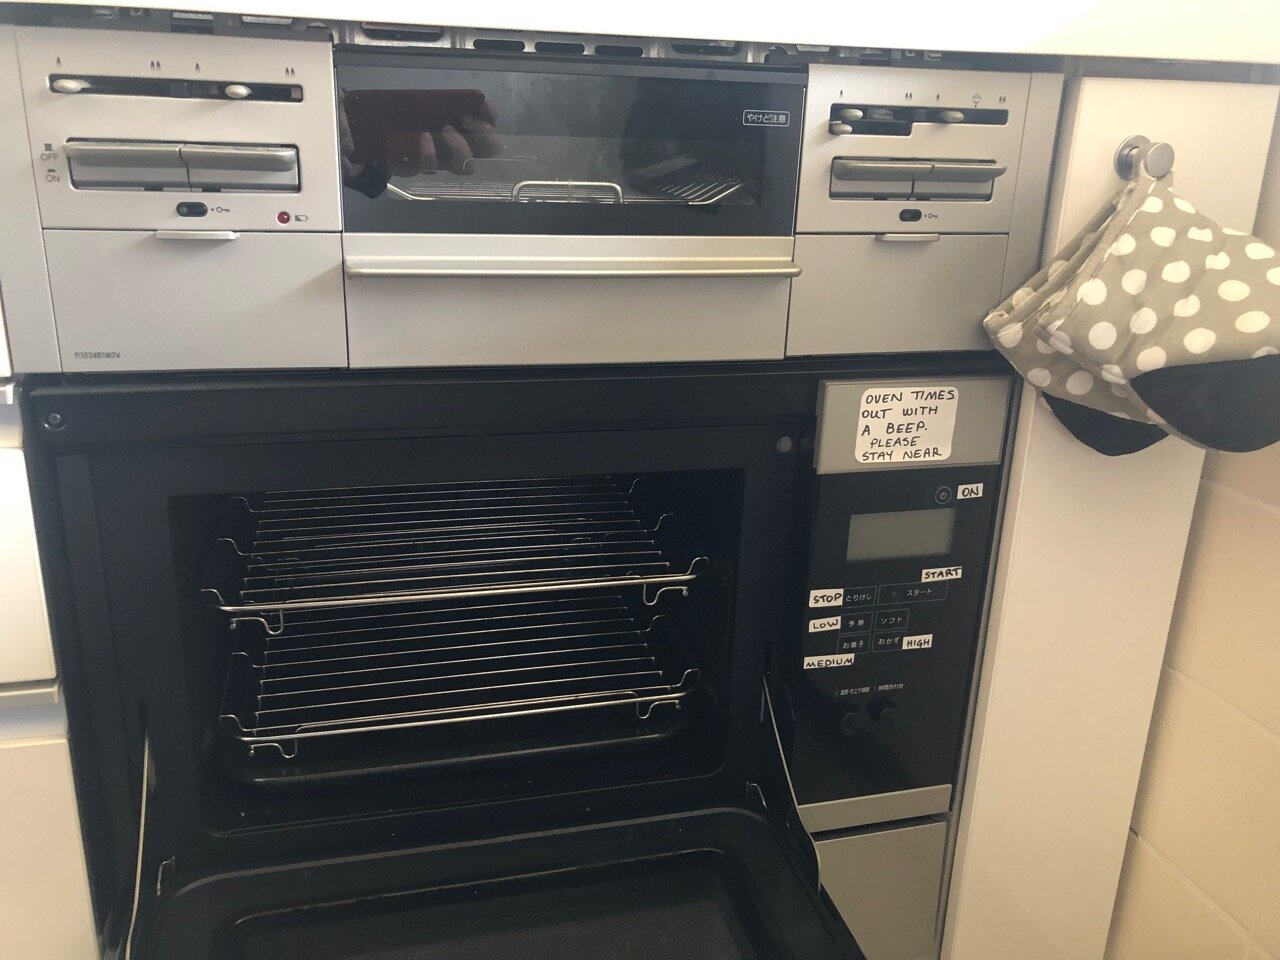 An actual oven